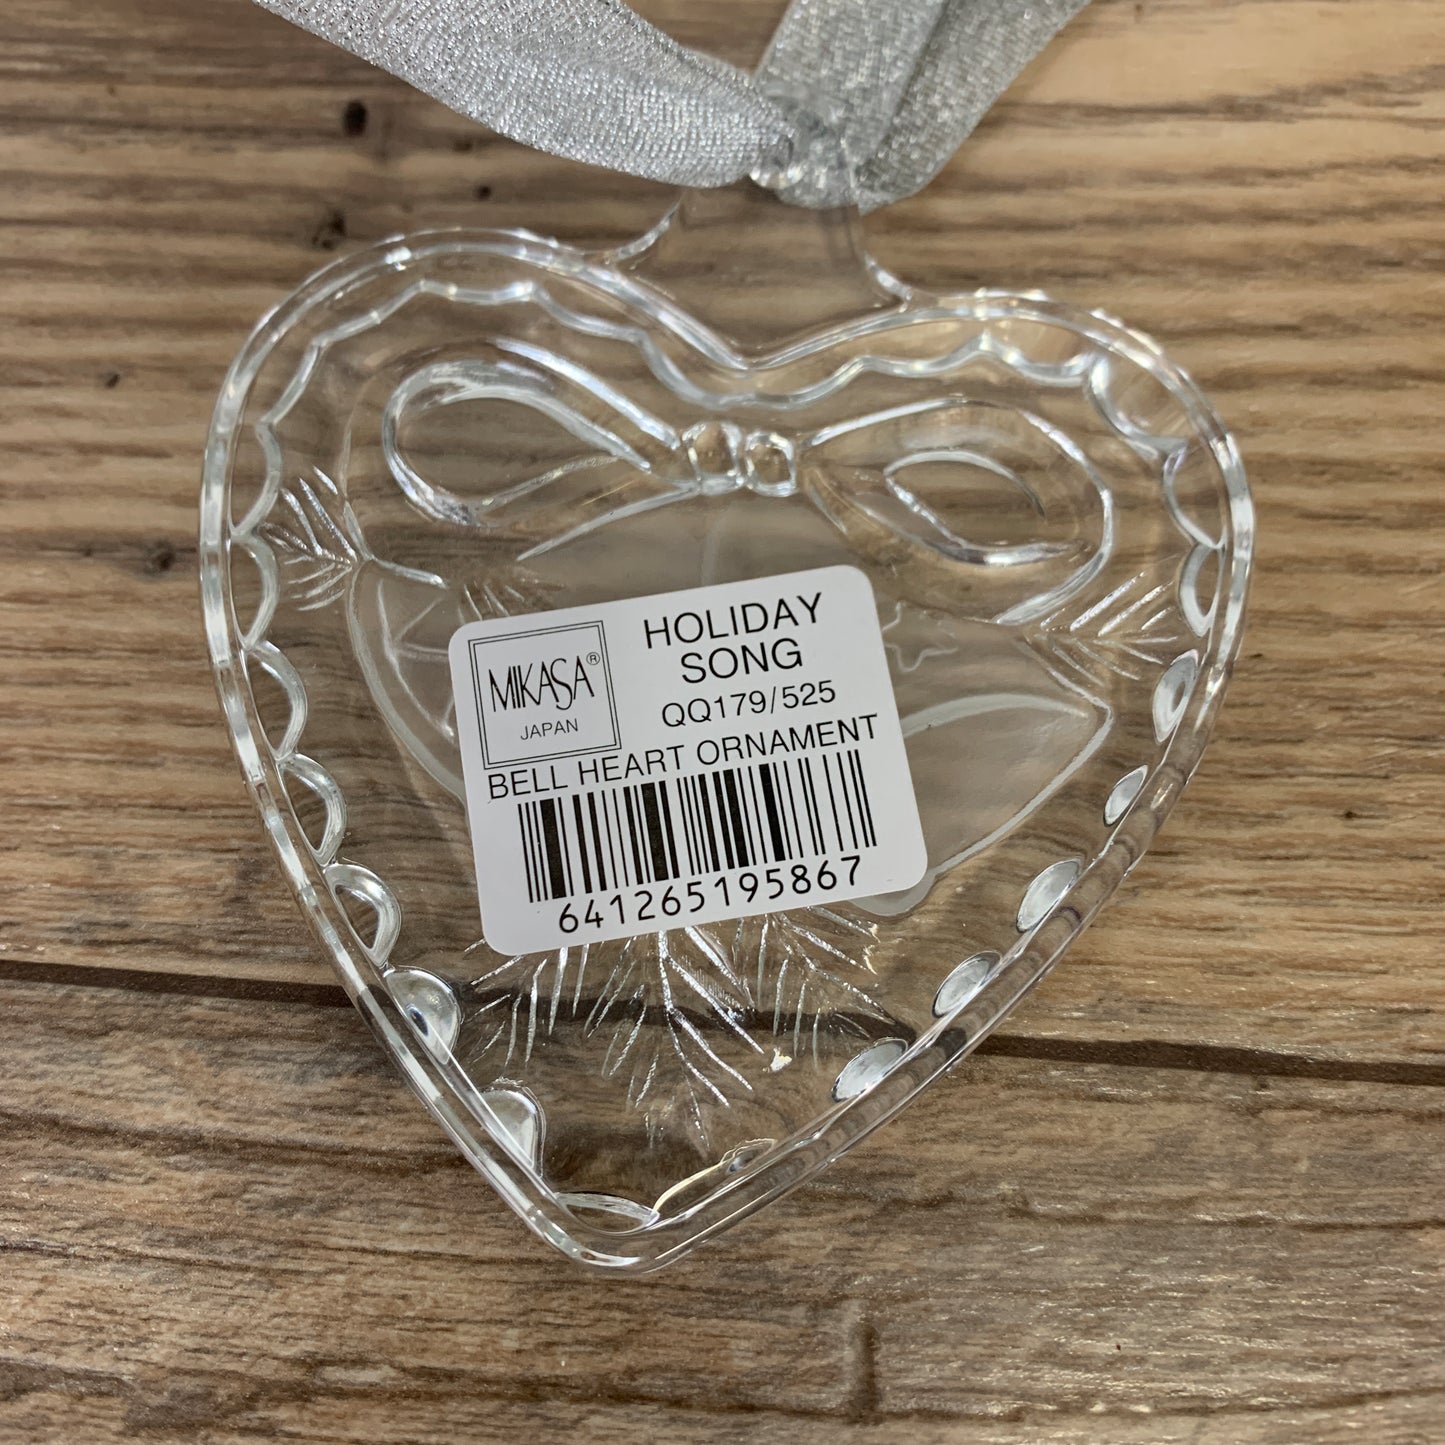 Mikasa Holiday Song Heart Shaped Crystal Ornament - In original Box